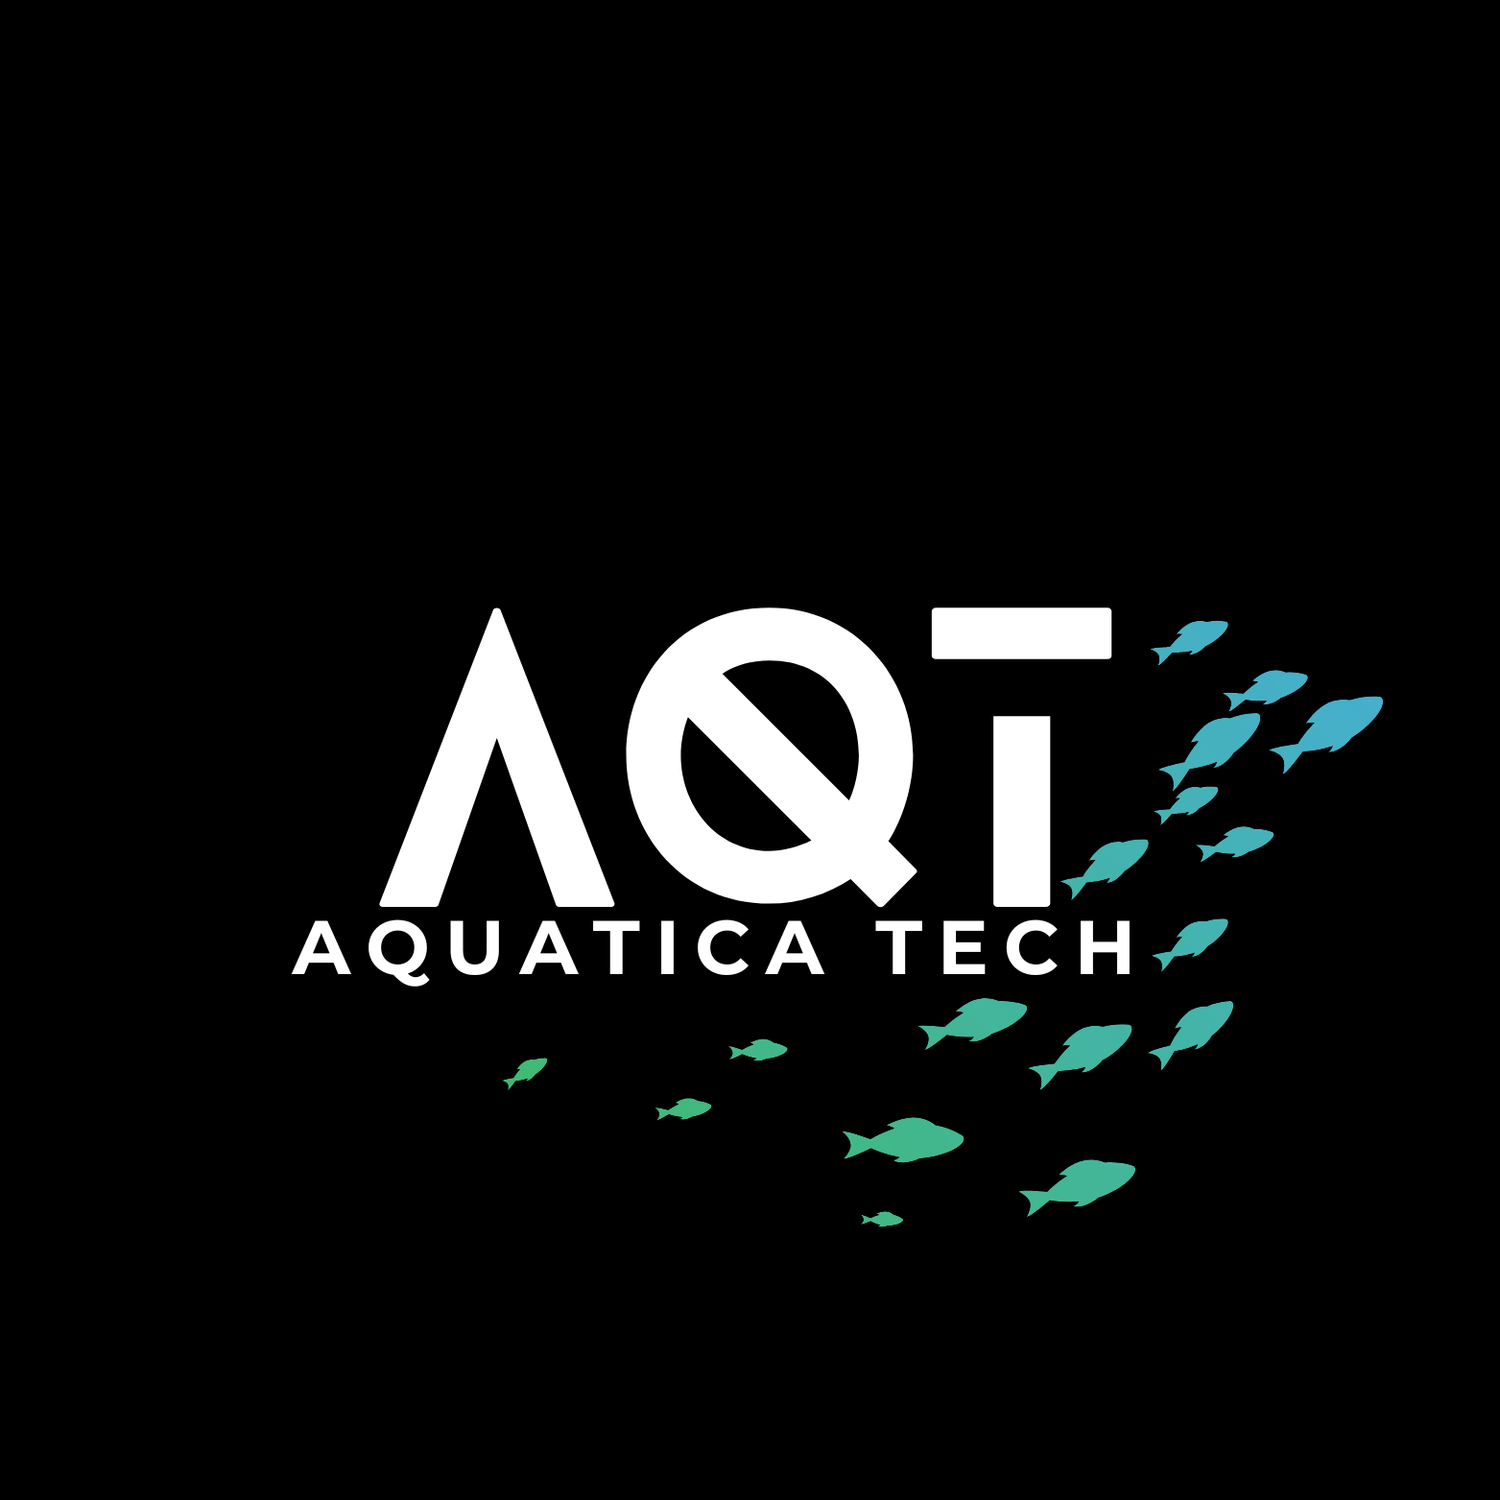 Aquatica Tech LTD